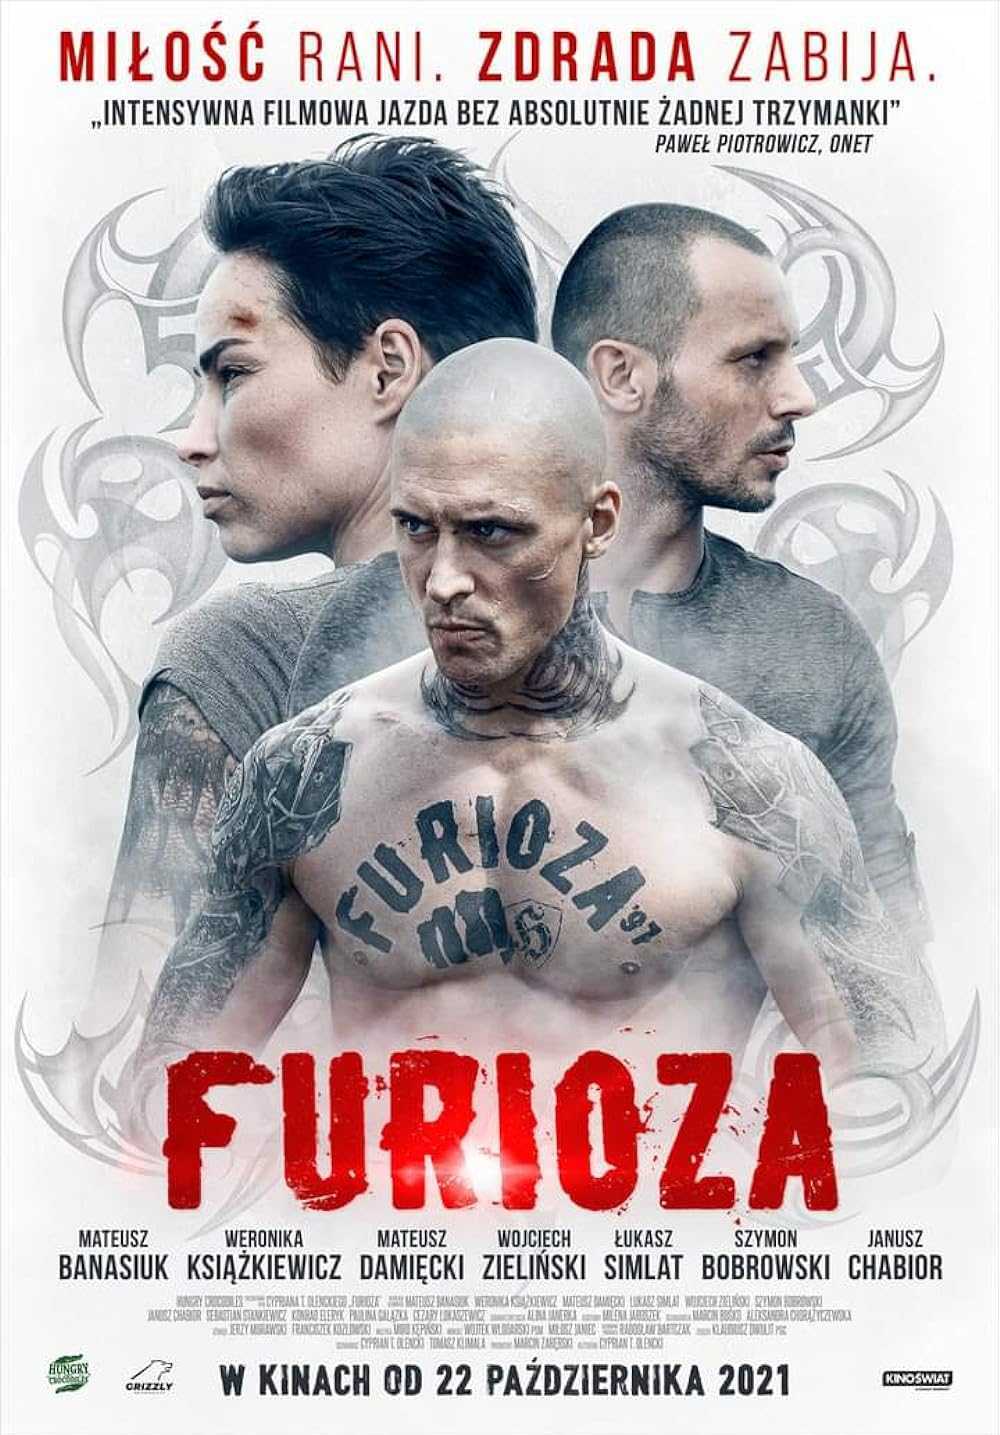 فیلم خشمگین Furioza 2022 دانلود و تماشای آنلاین